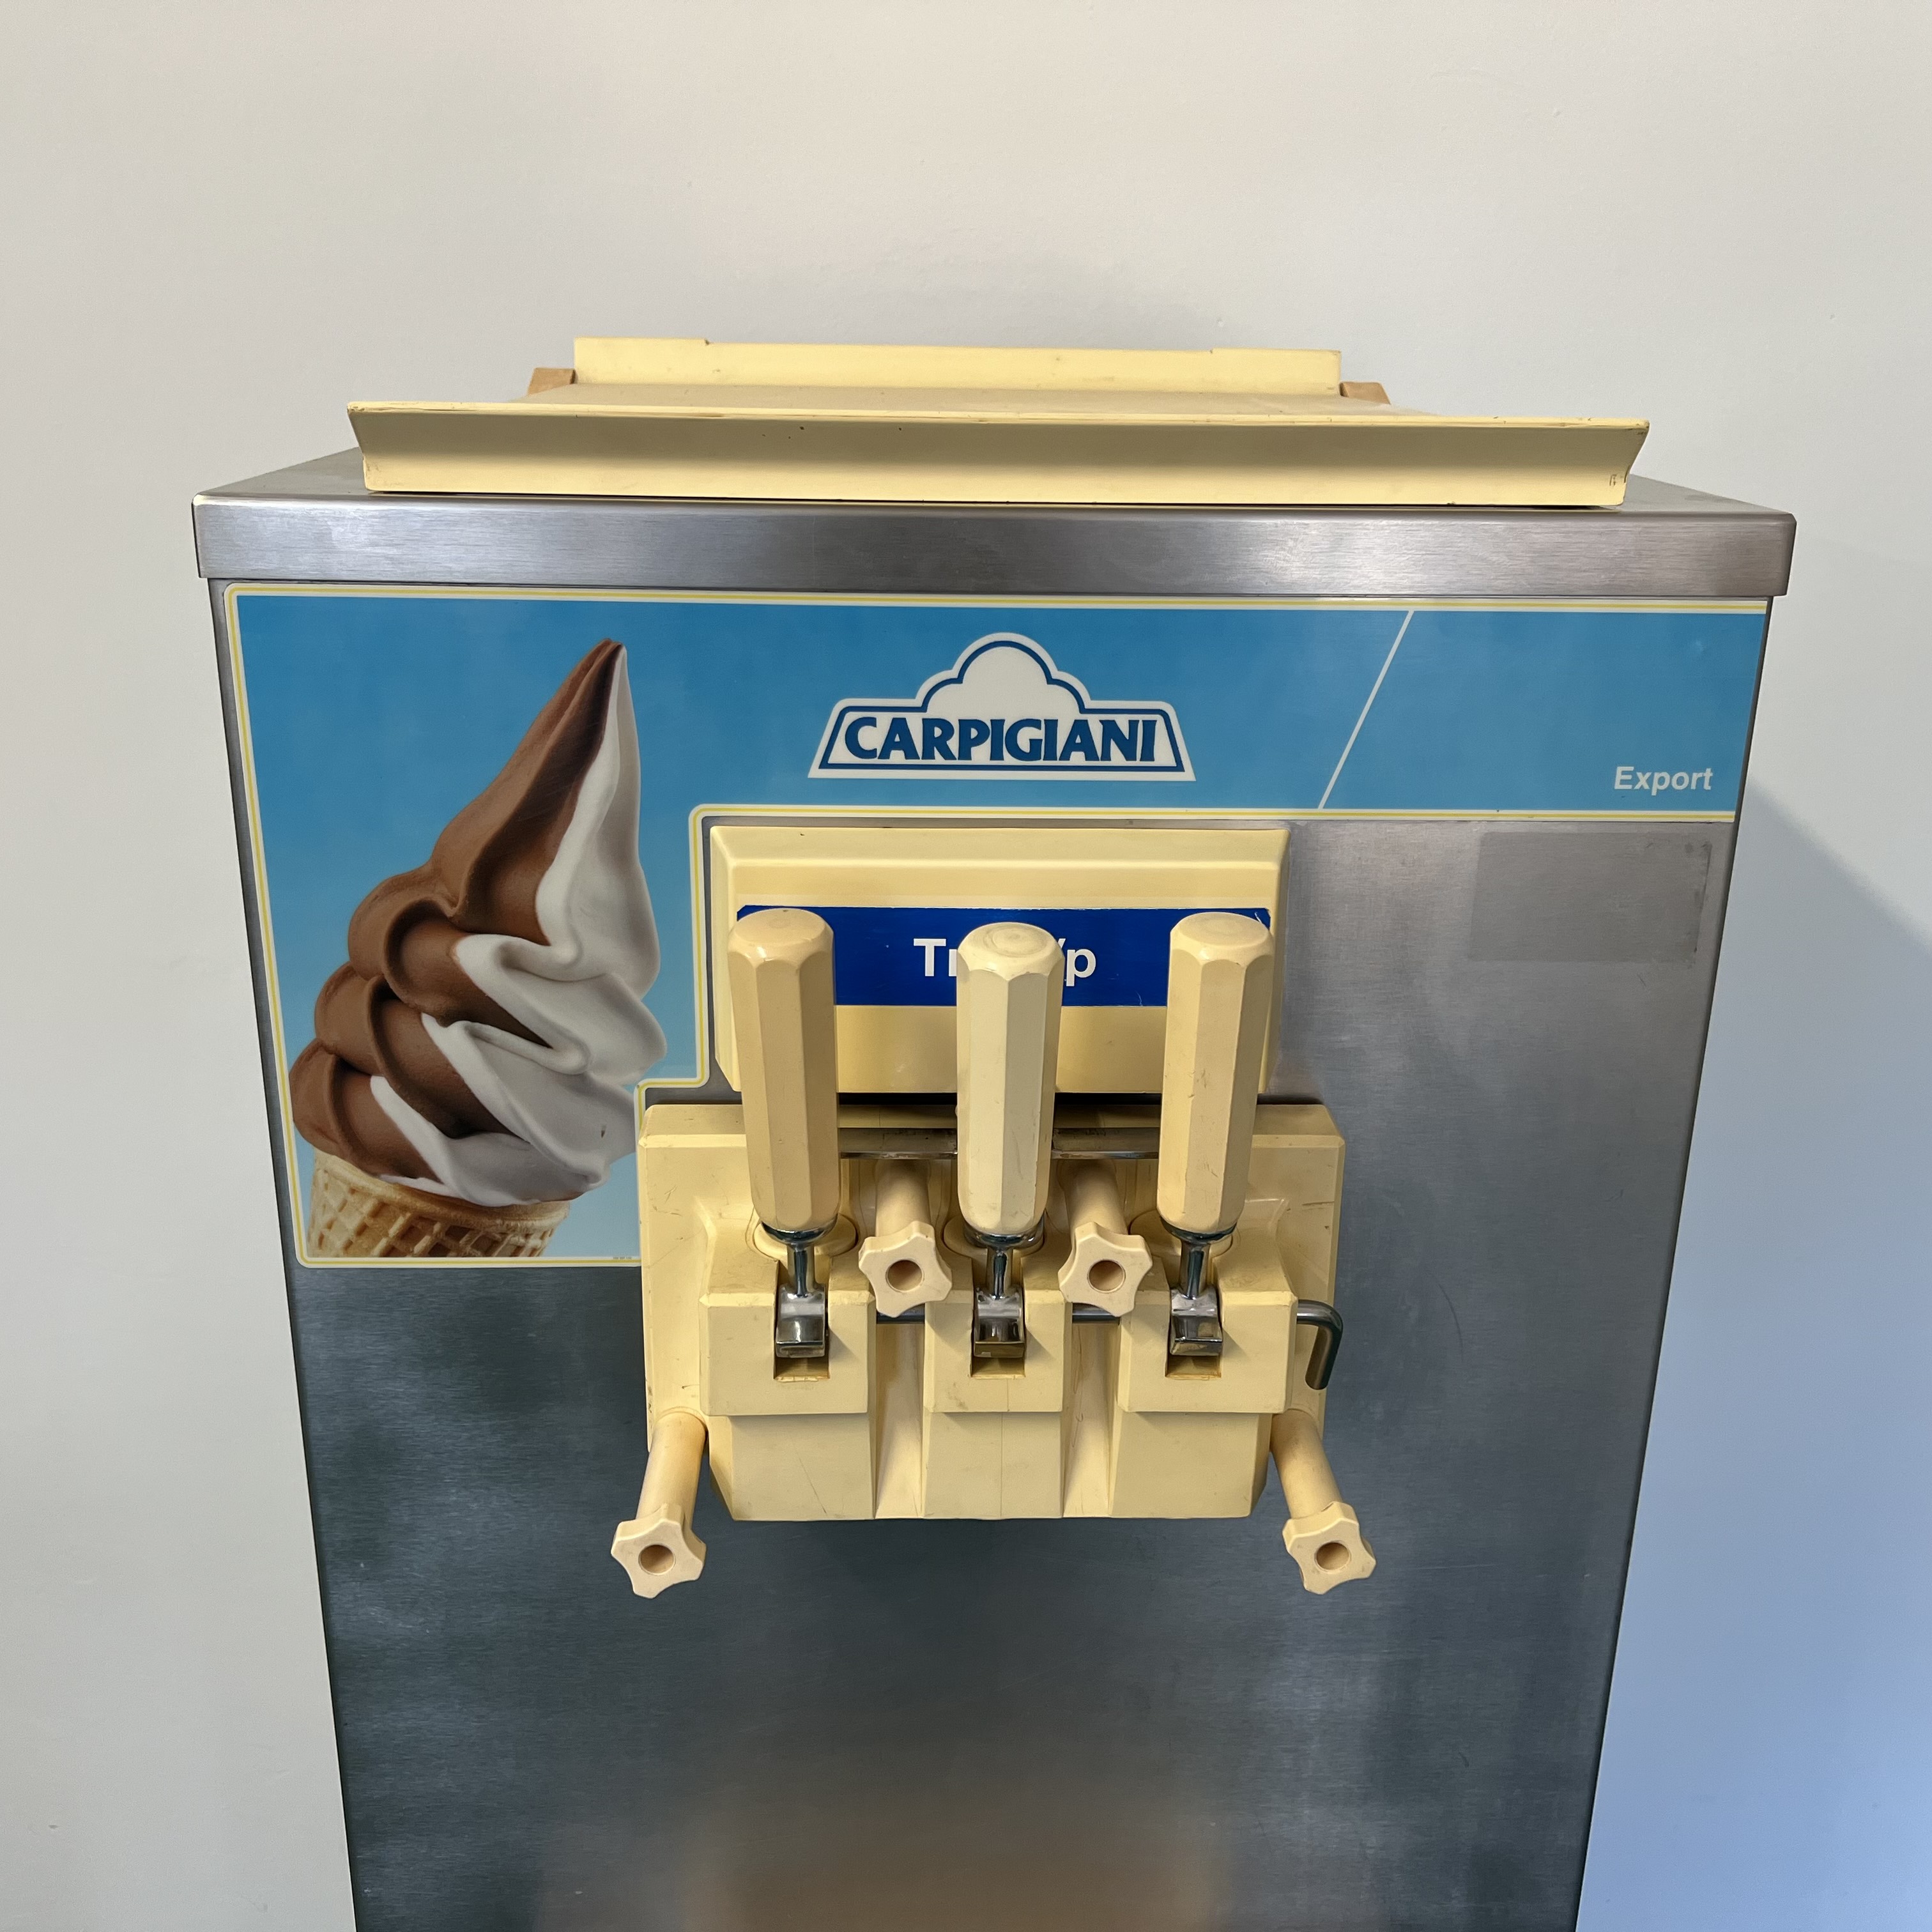 Carpigiani TRE / BP lágyfagylaltgép, lágyfagyi készítő